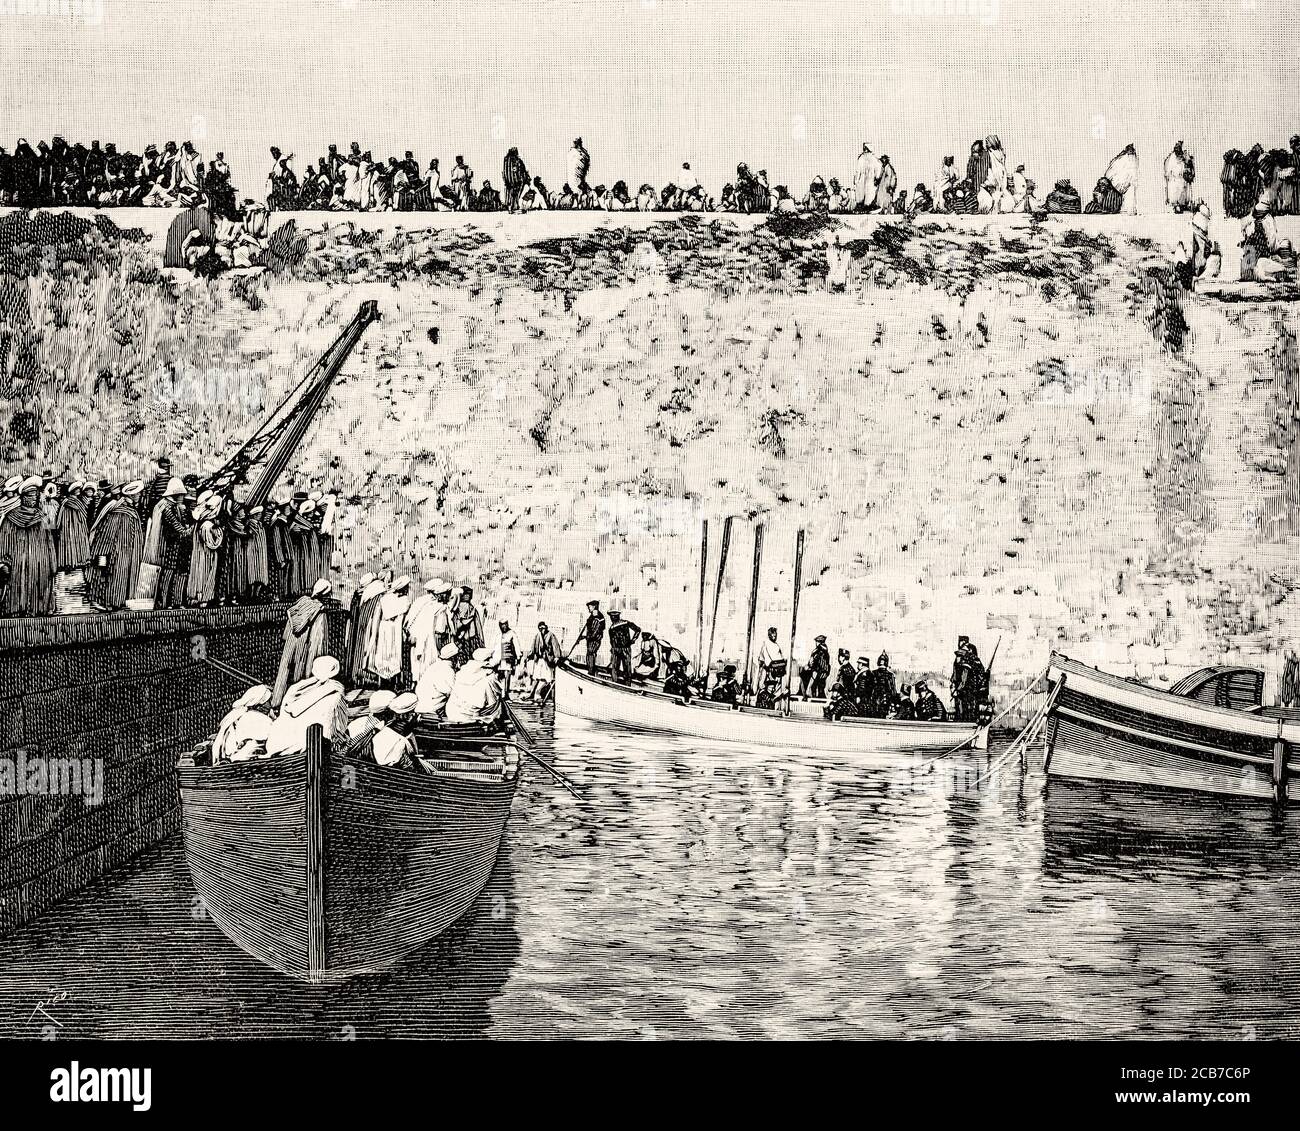 Jetée du port de Mazagan, Maroc. Illustration gravée de la Ilustracion Española y Americana datant du XIXe siècle 1894 Banque D'Images